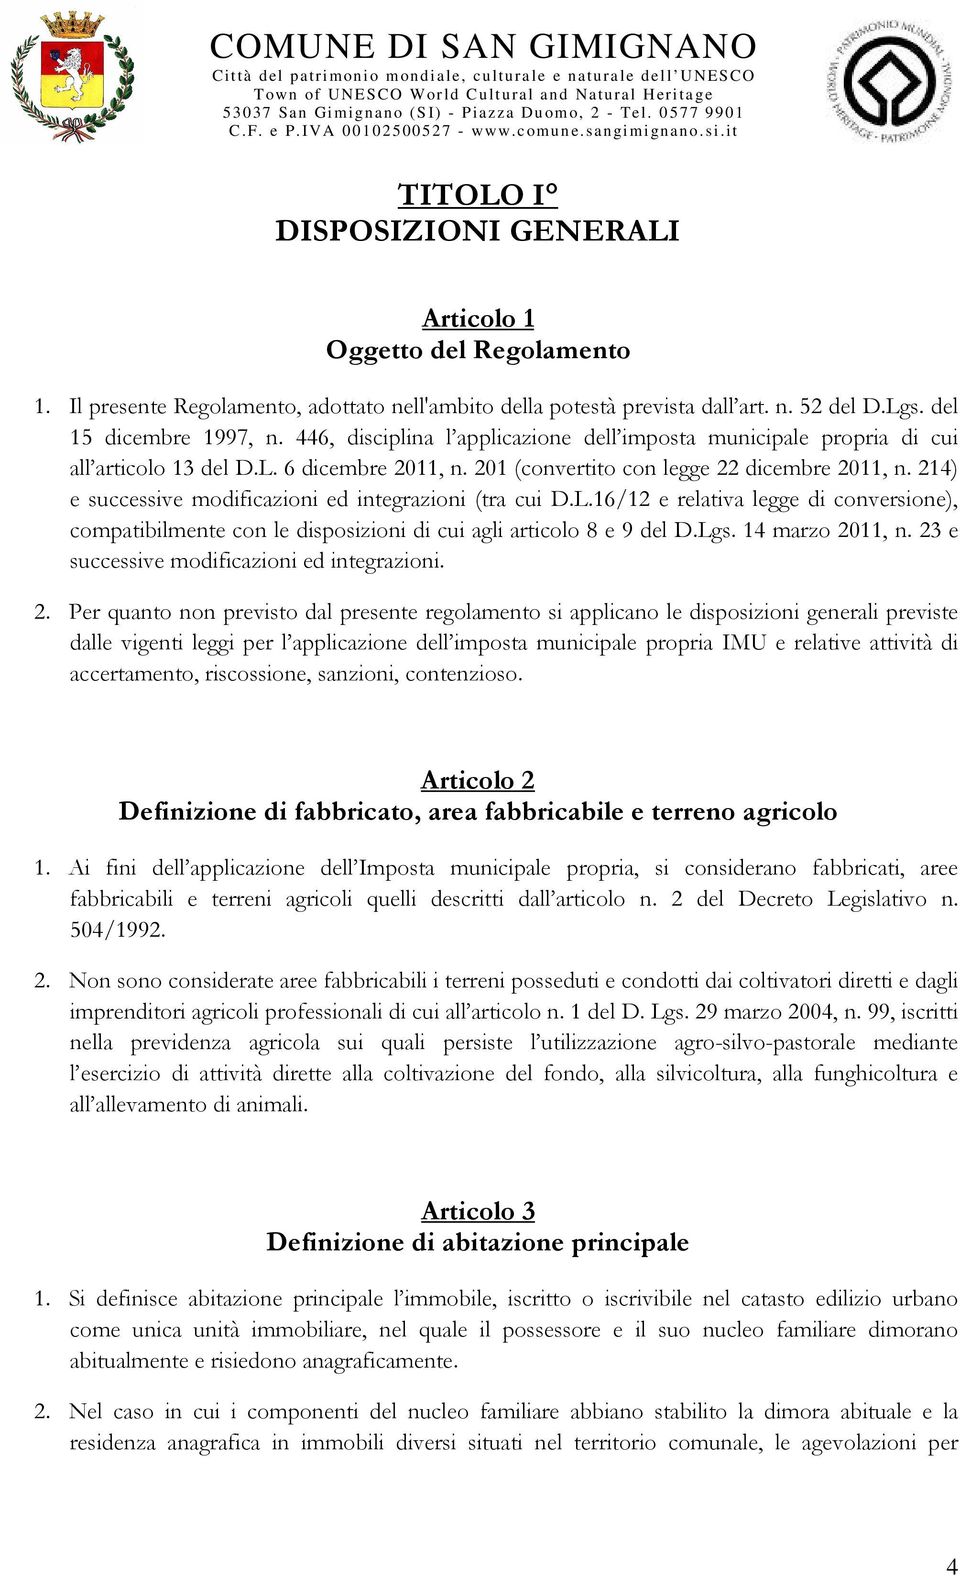 214) e successive modificazioni ed integrazioni (tra cui D.L.16/12 e relativa legge di conversione), compatibilmente con le disposizioni di cui agli articolo 8 e 9 del D.Lgs. 14 marzo 2011, n.